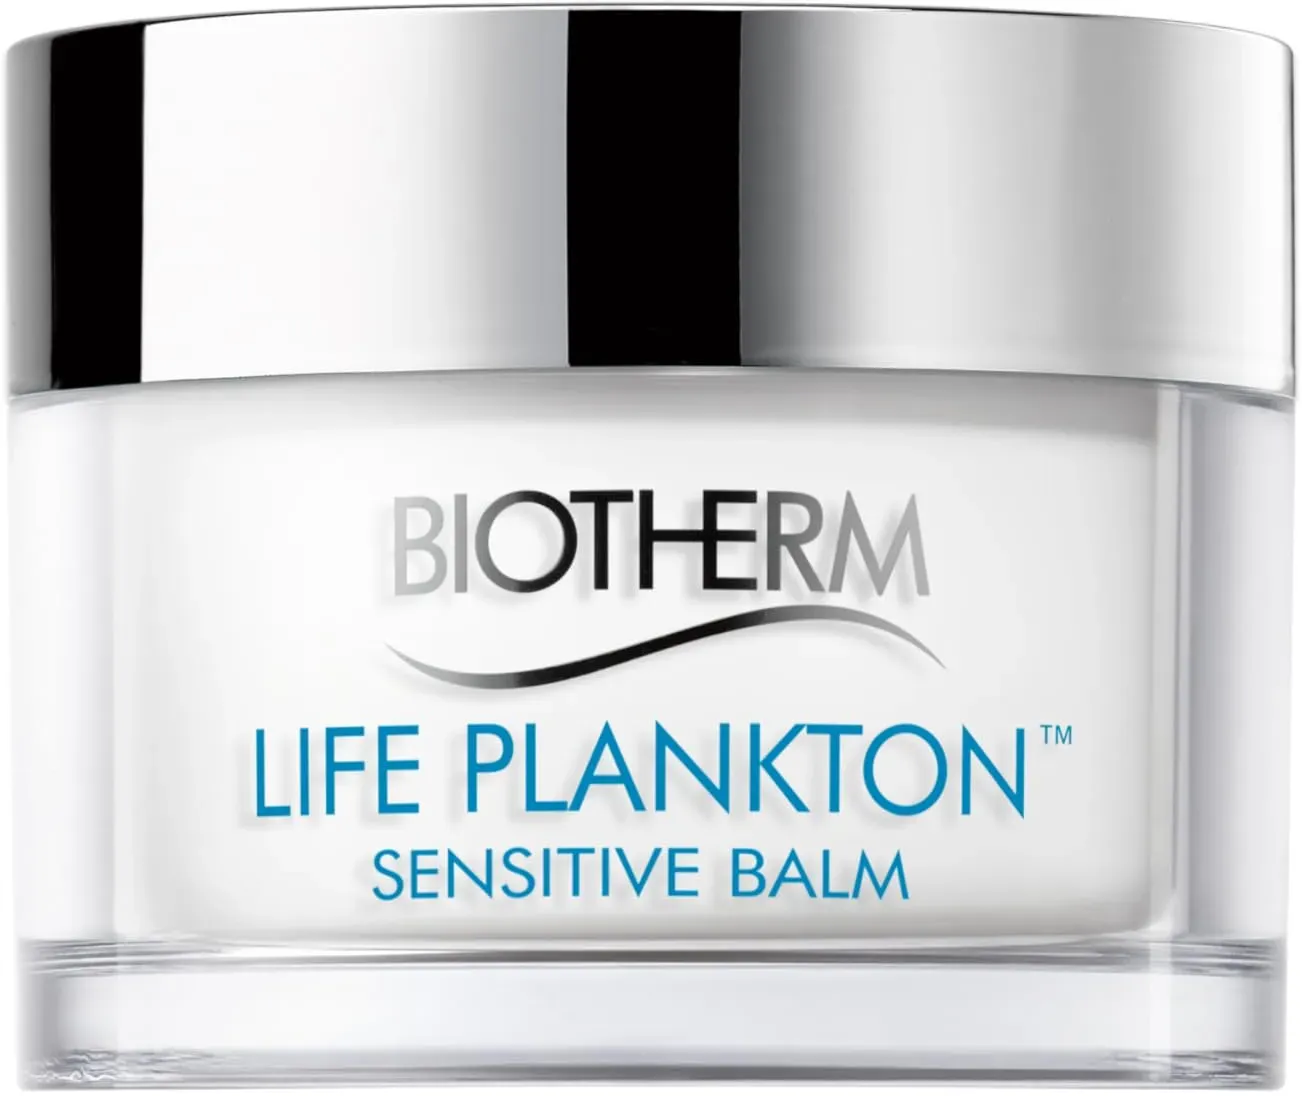 Biotherm Life Plankton Sensitive Balm, regenerierender Gesichtsbalsam mit Life Plankton, feuchtigkeitsspendende Tagespflege, für ein frisch aussehendes Hautbild, 50 ml